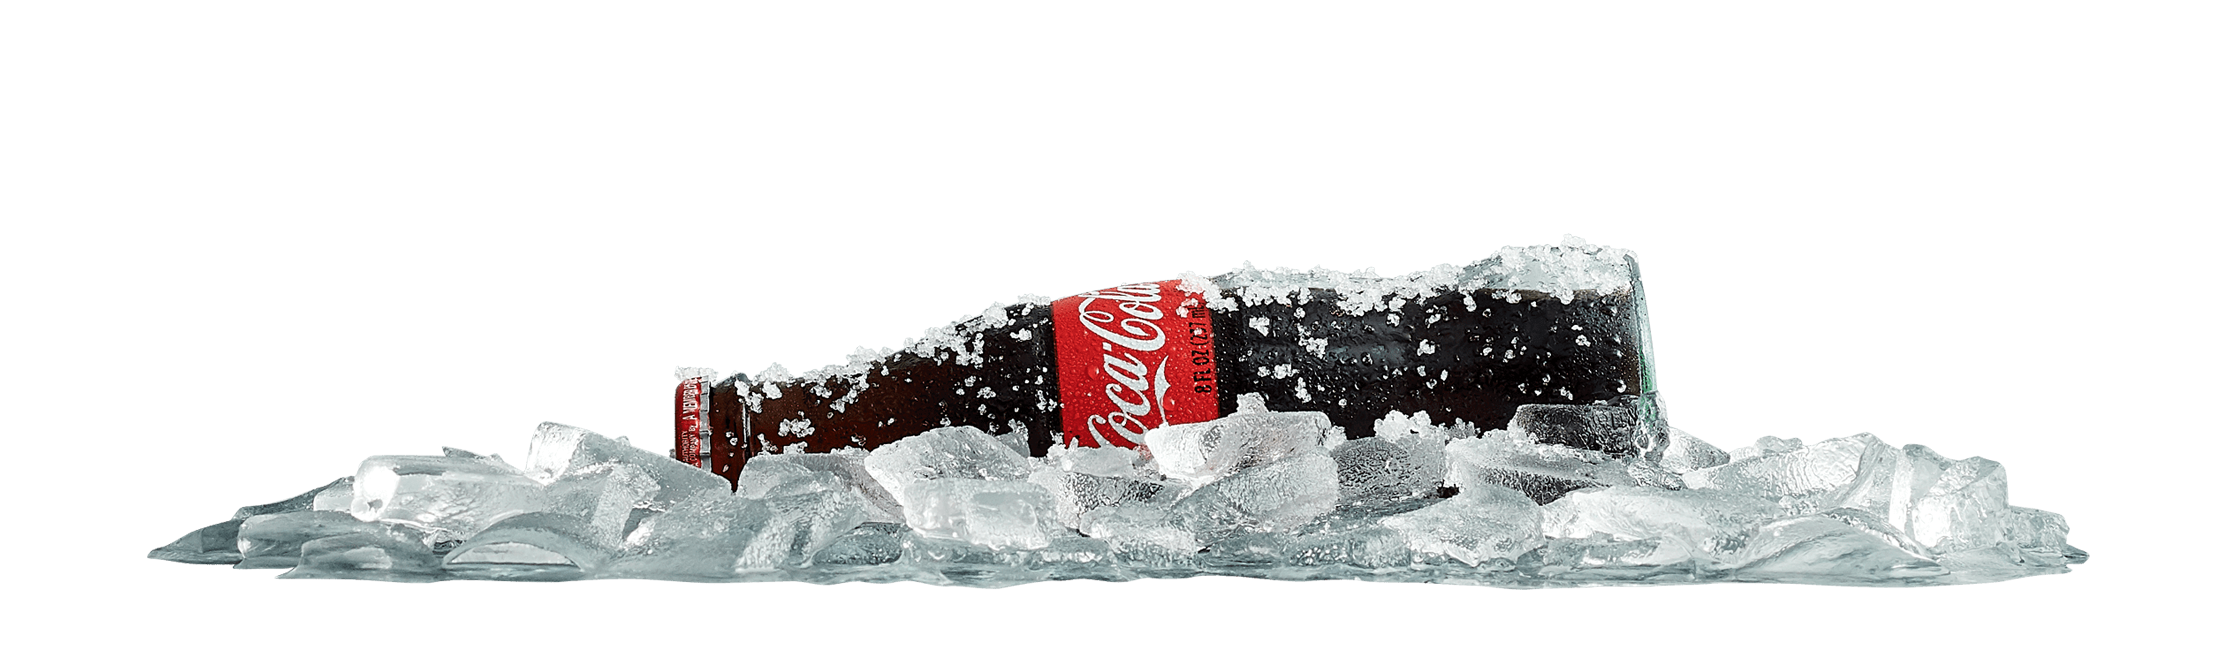 coke with ice